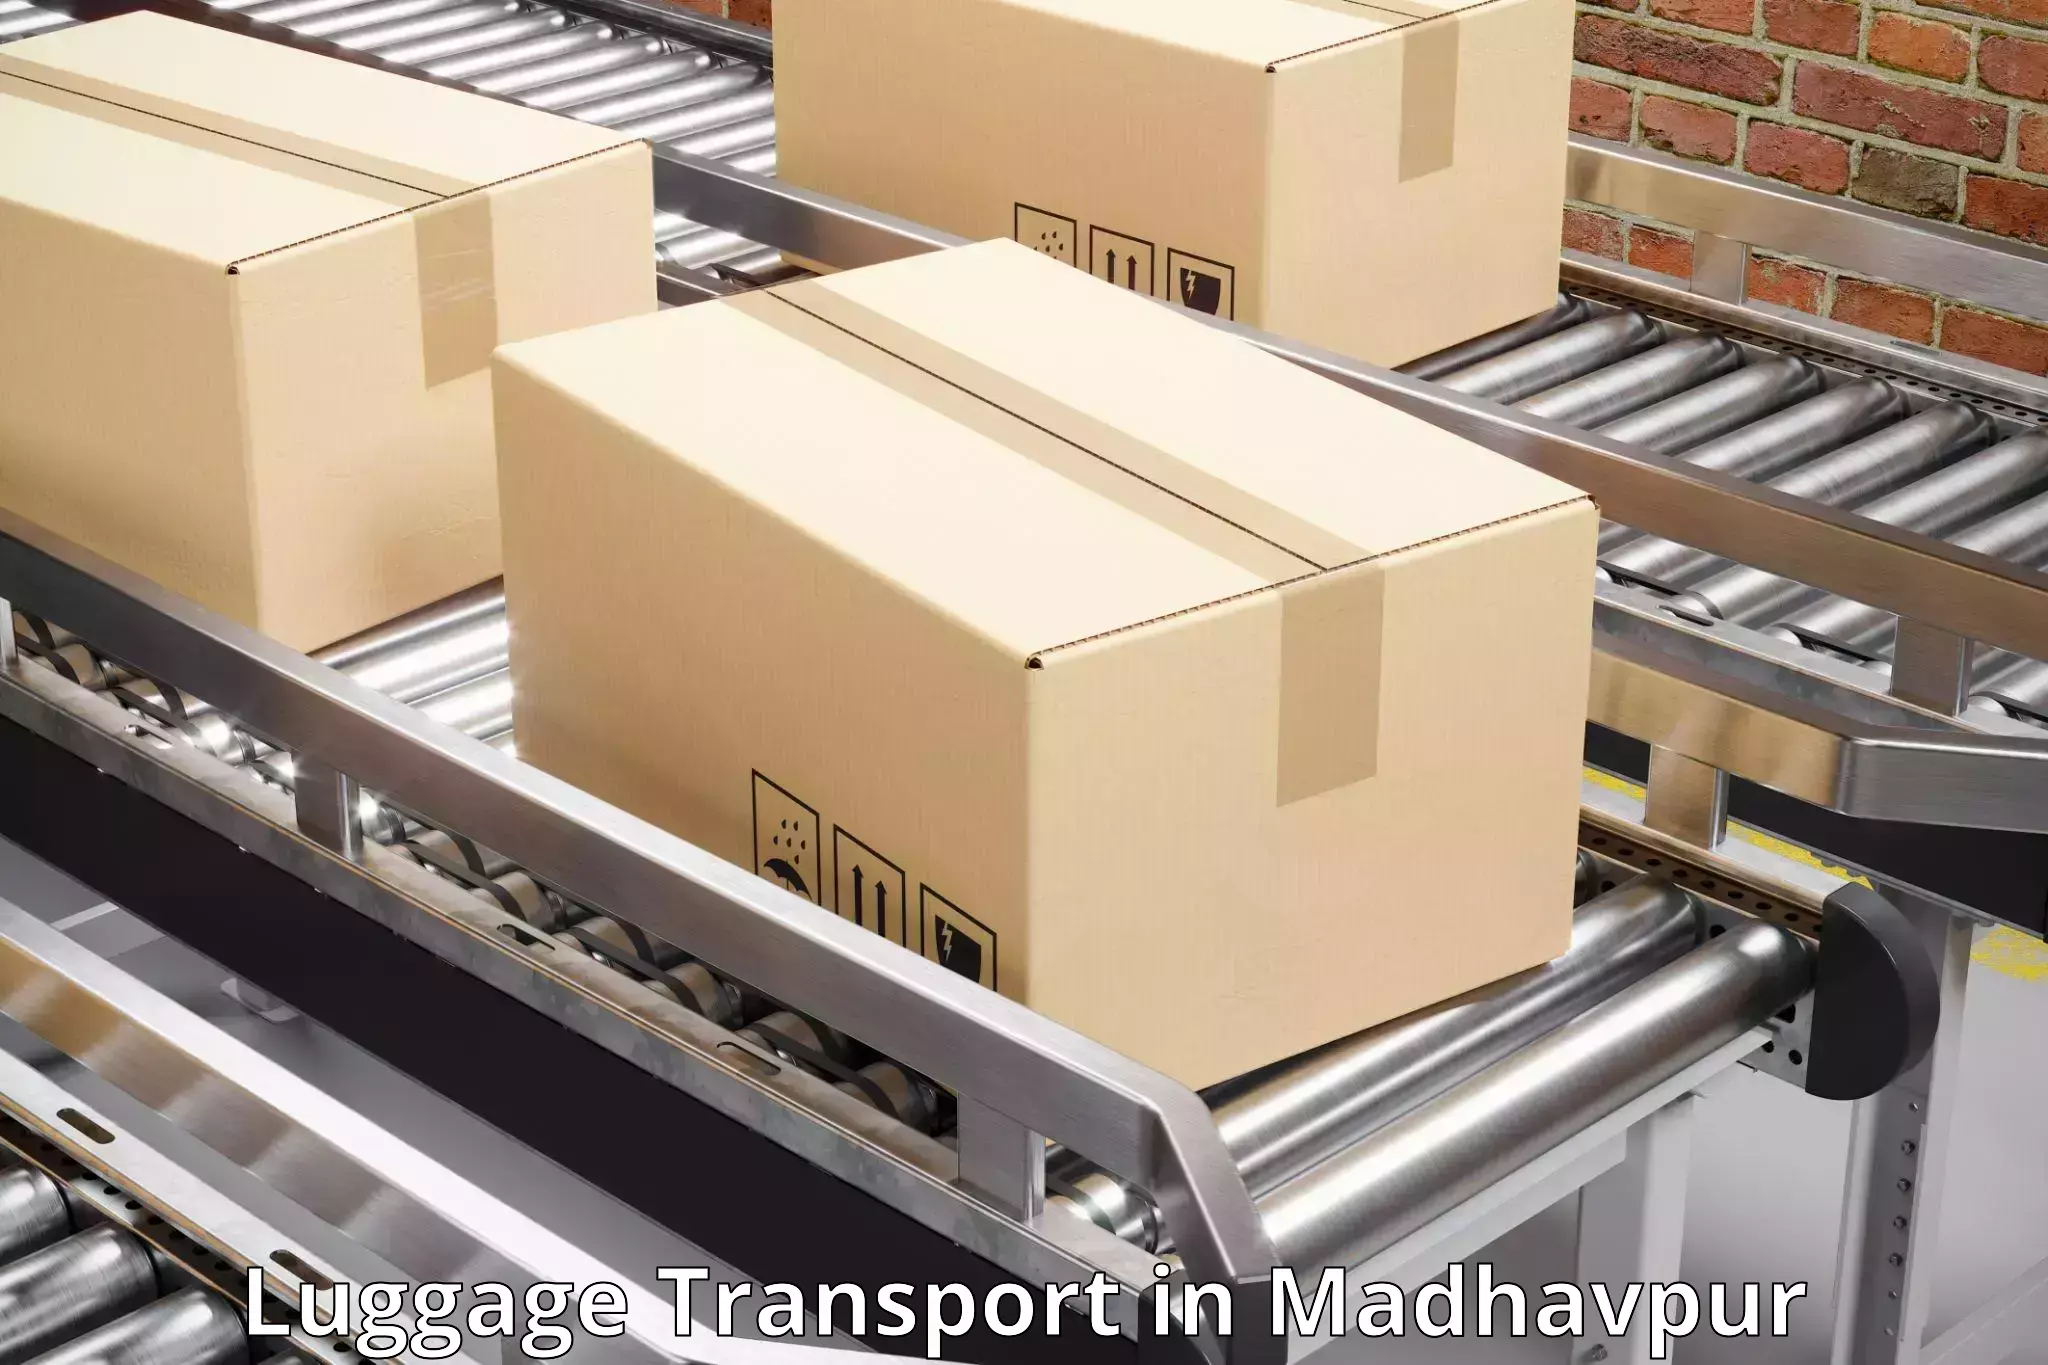 Luggage transport logistics in Madhavpur